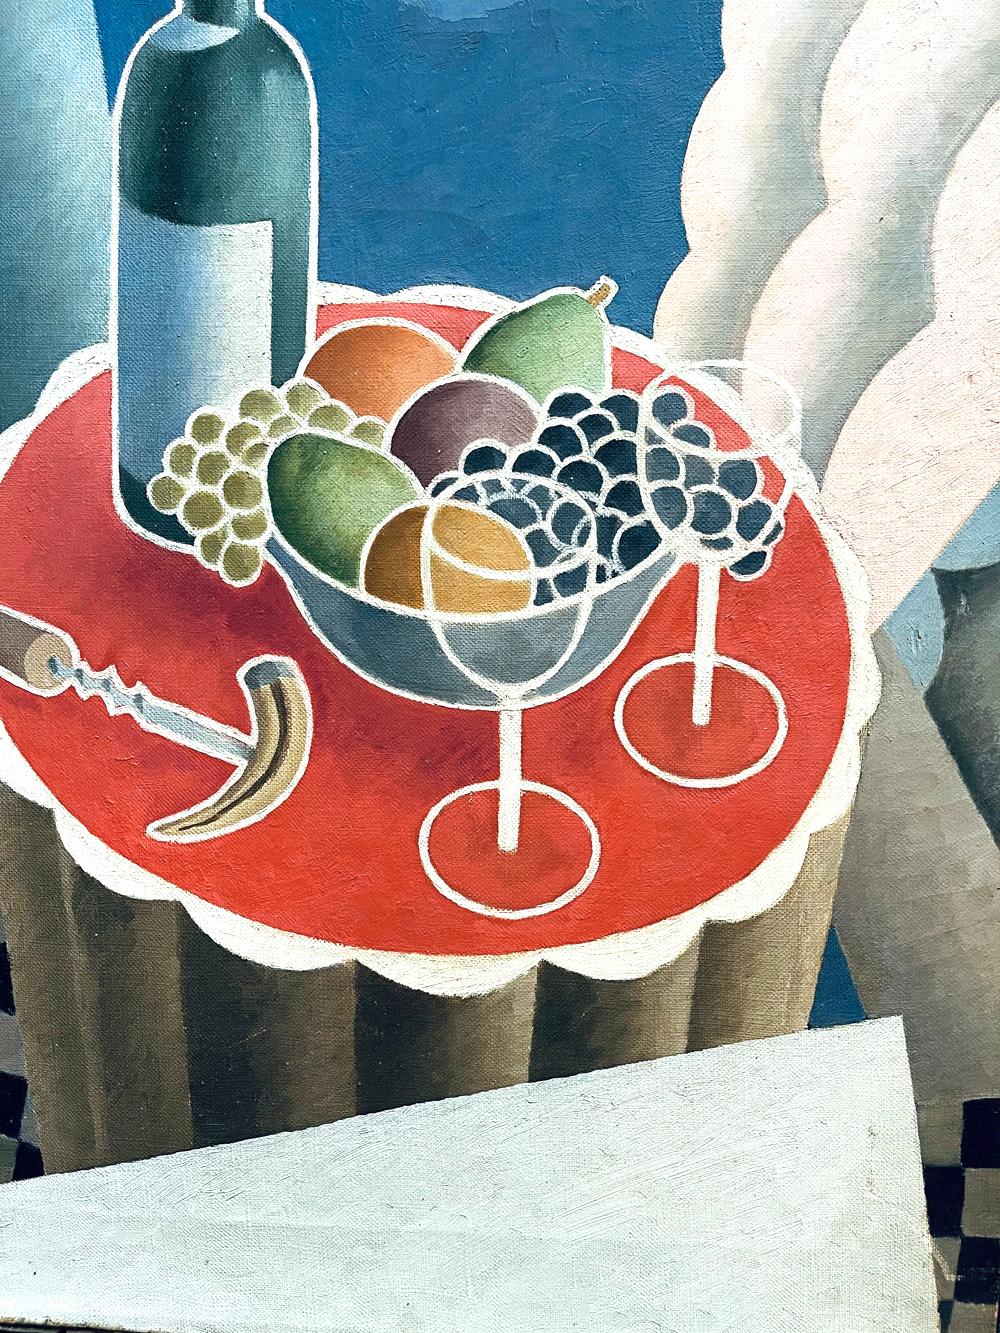 Témoignant clairement de l'influence du cubisme français et de l'Art déco, cette magnifique peinture aux teintes éclatantes représente une bouteille de vin, une coupe de fruits, un décapsuleur et des verres à vin, le tout sur une table inclinée aux